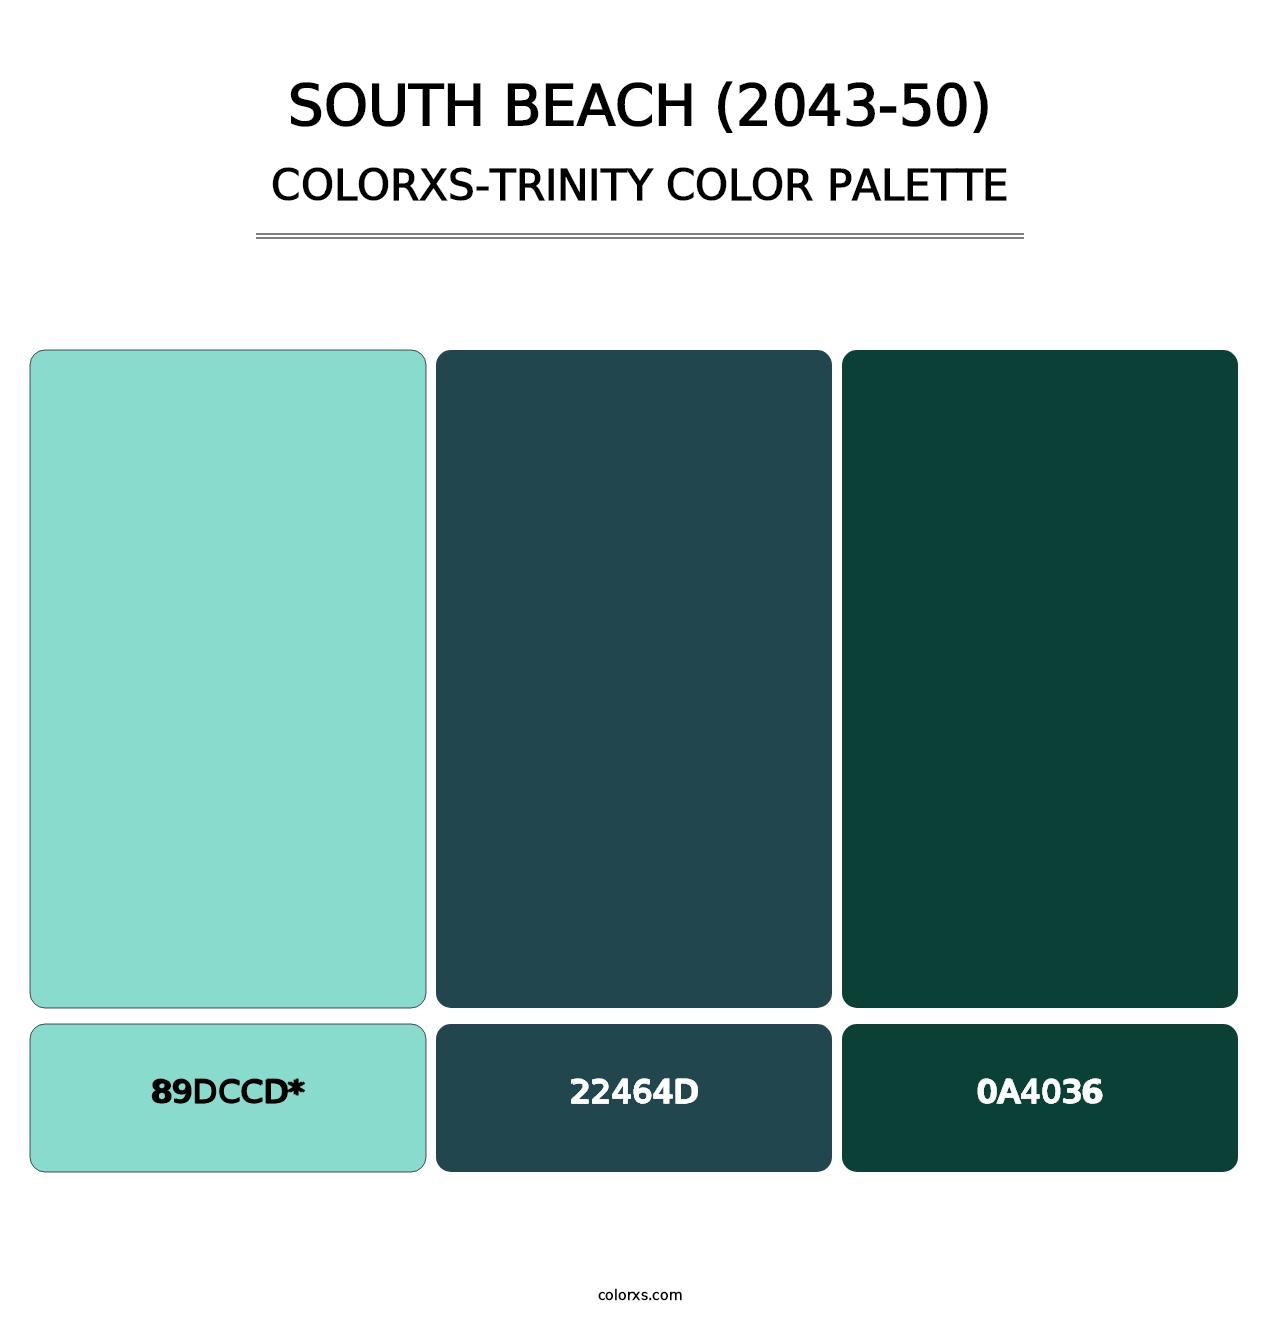 South Beach (2043-50) - Colorxs Trinity Palette